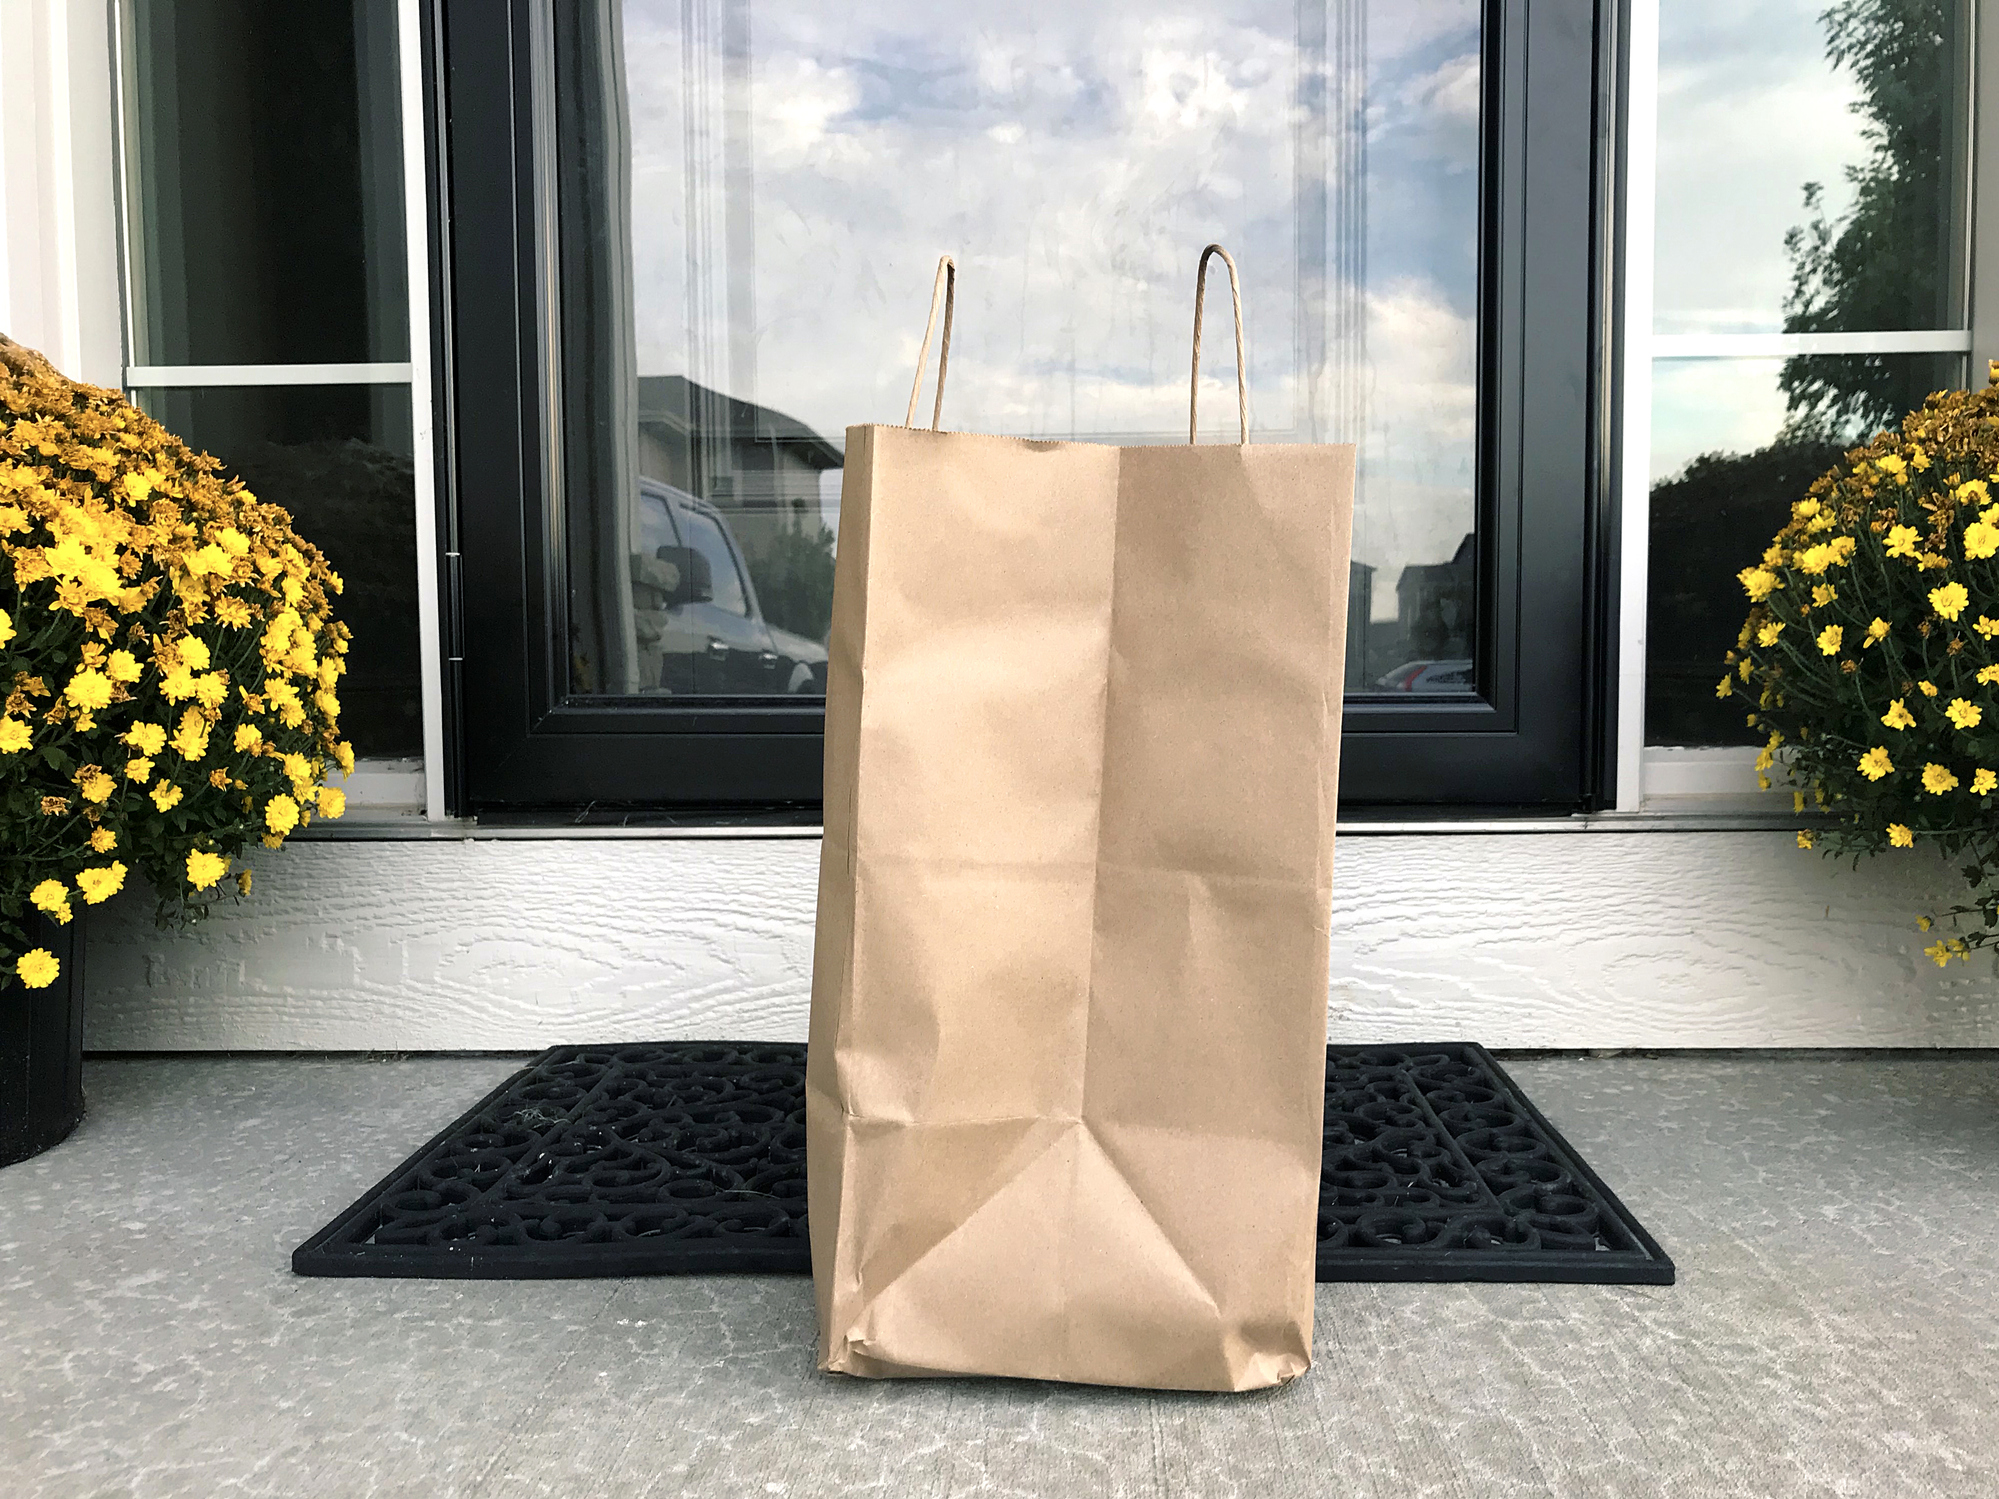 stock photo of grocery bag on door step